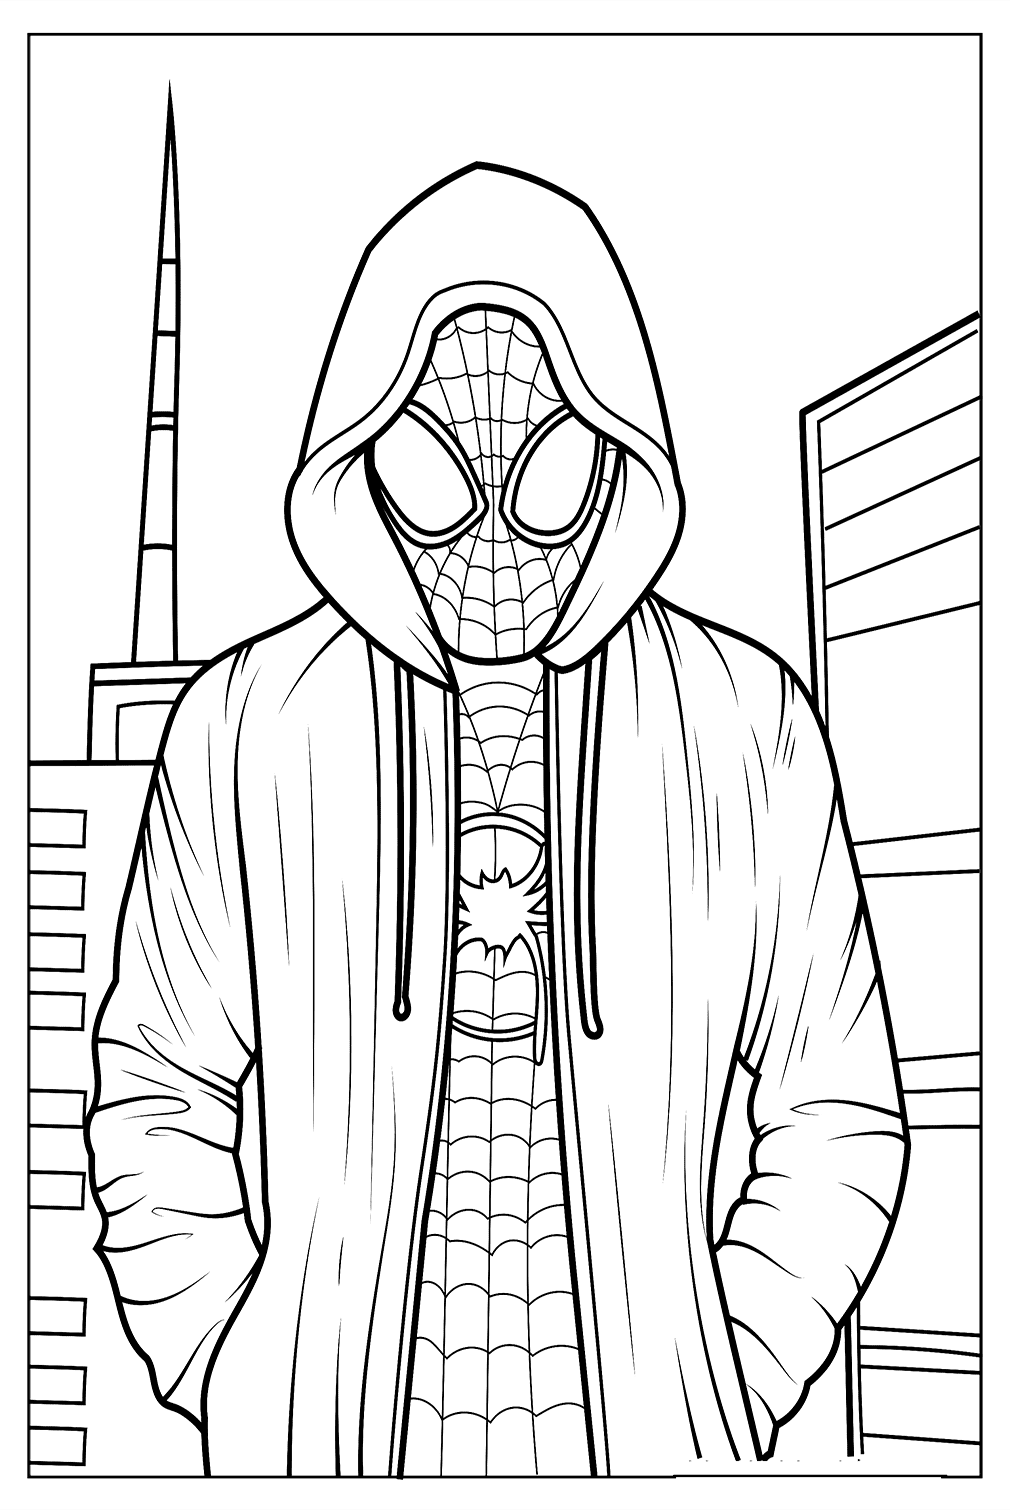 Página para colorear realista de Miles Moralees de Spider-Man: Across the Spider